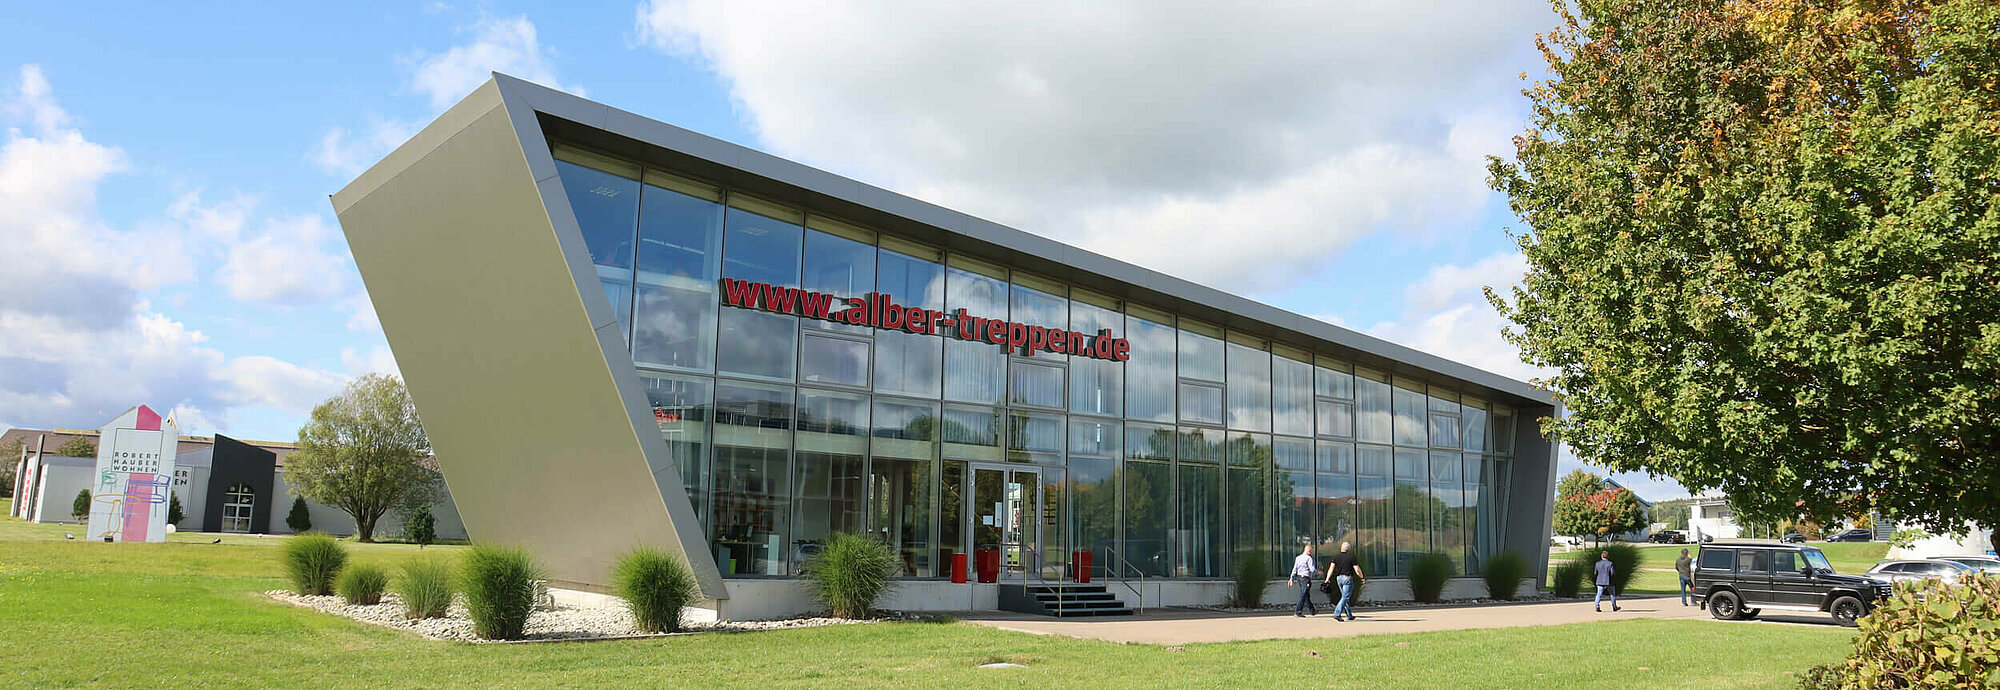 Alber Treppensysteme GmbH